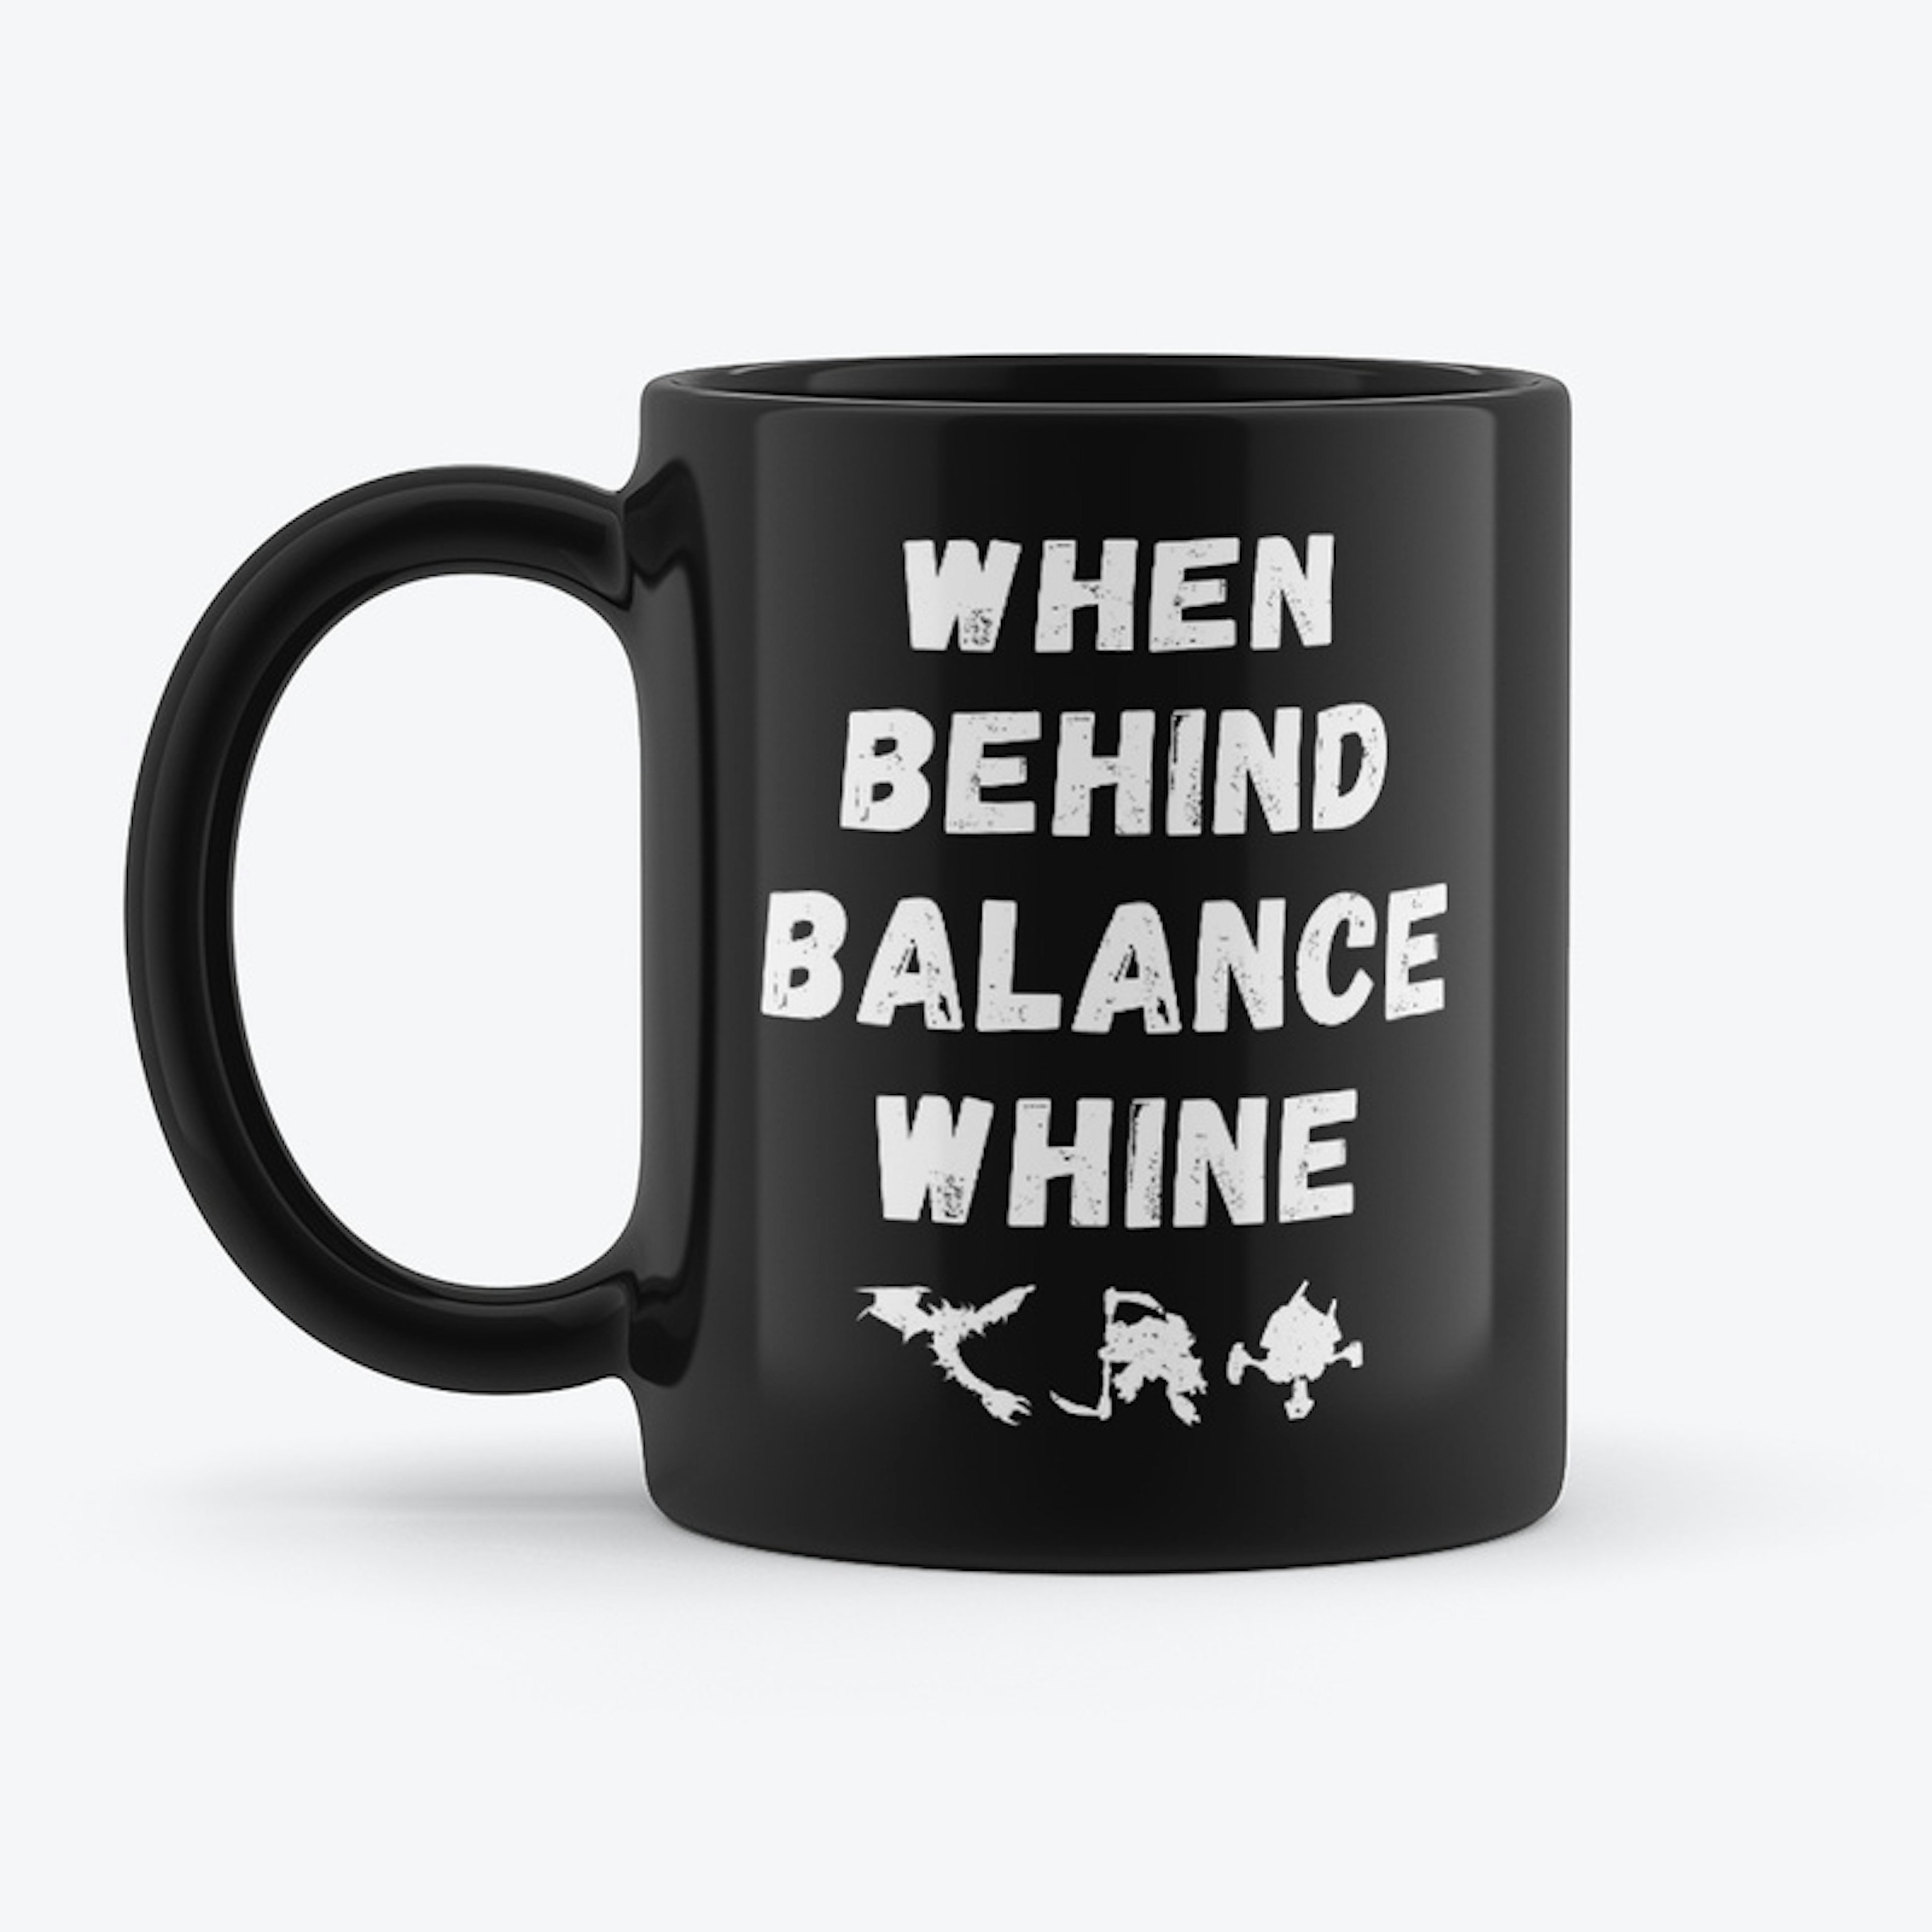 When Behind Balance Whine